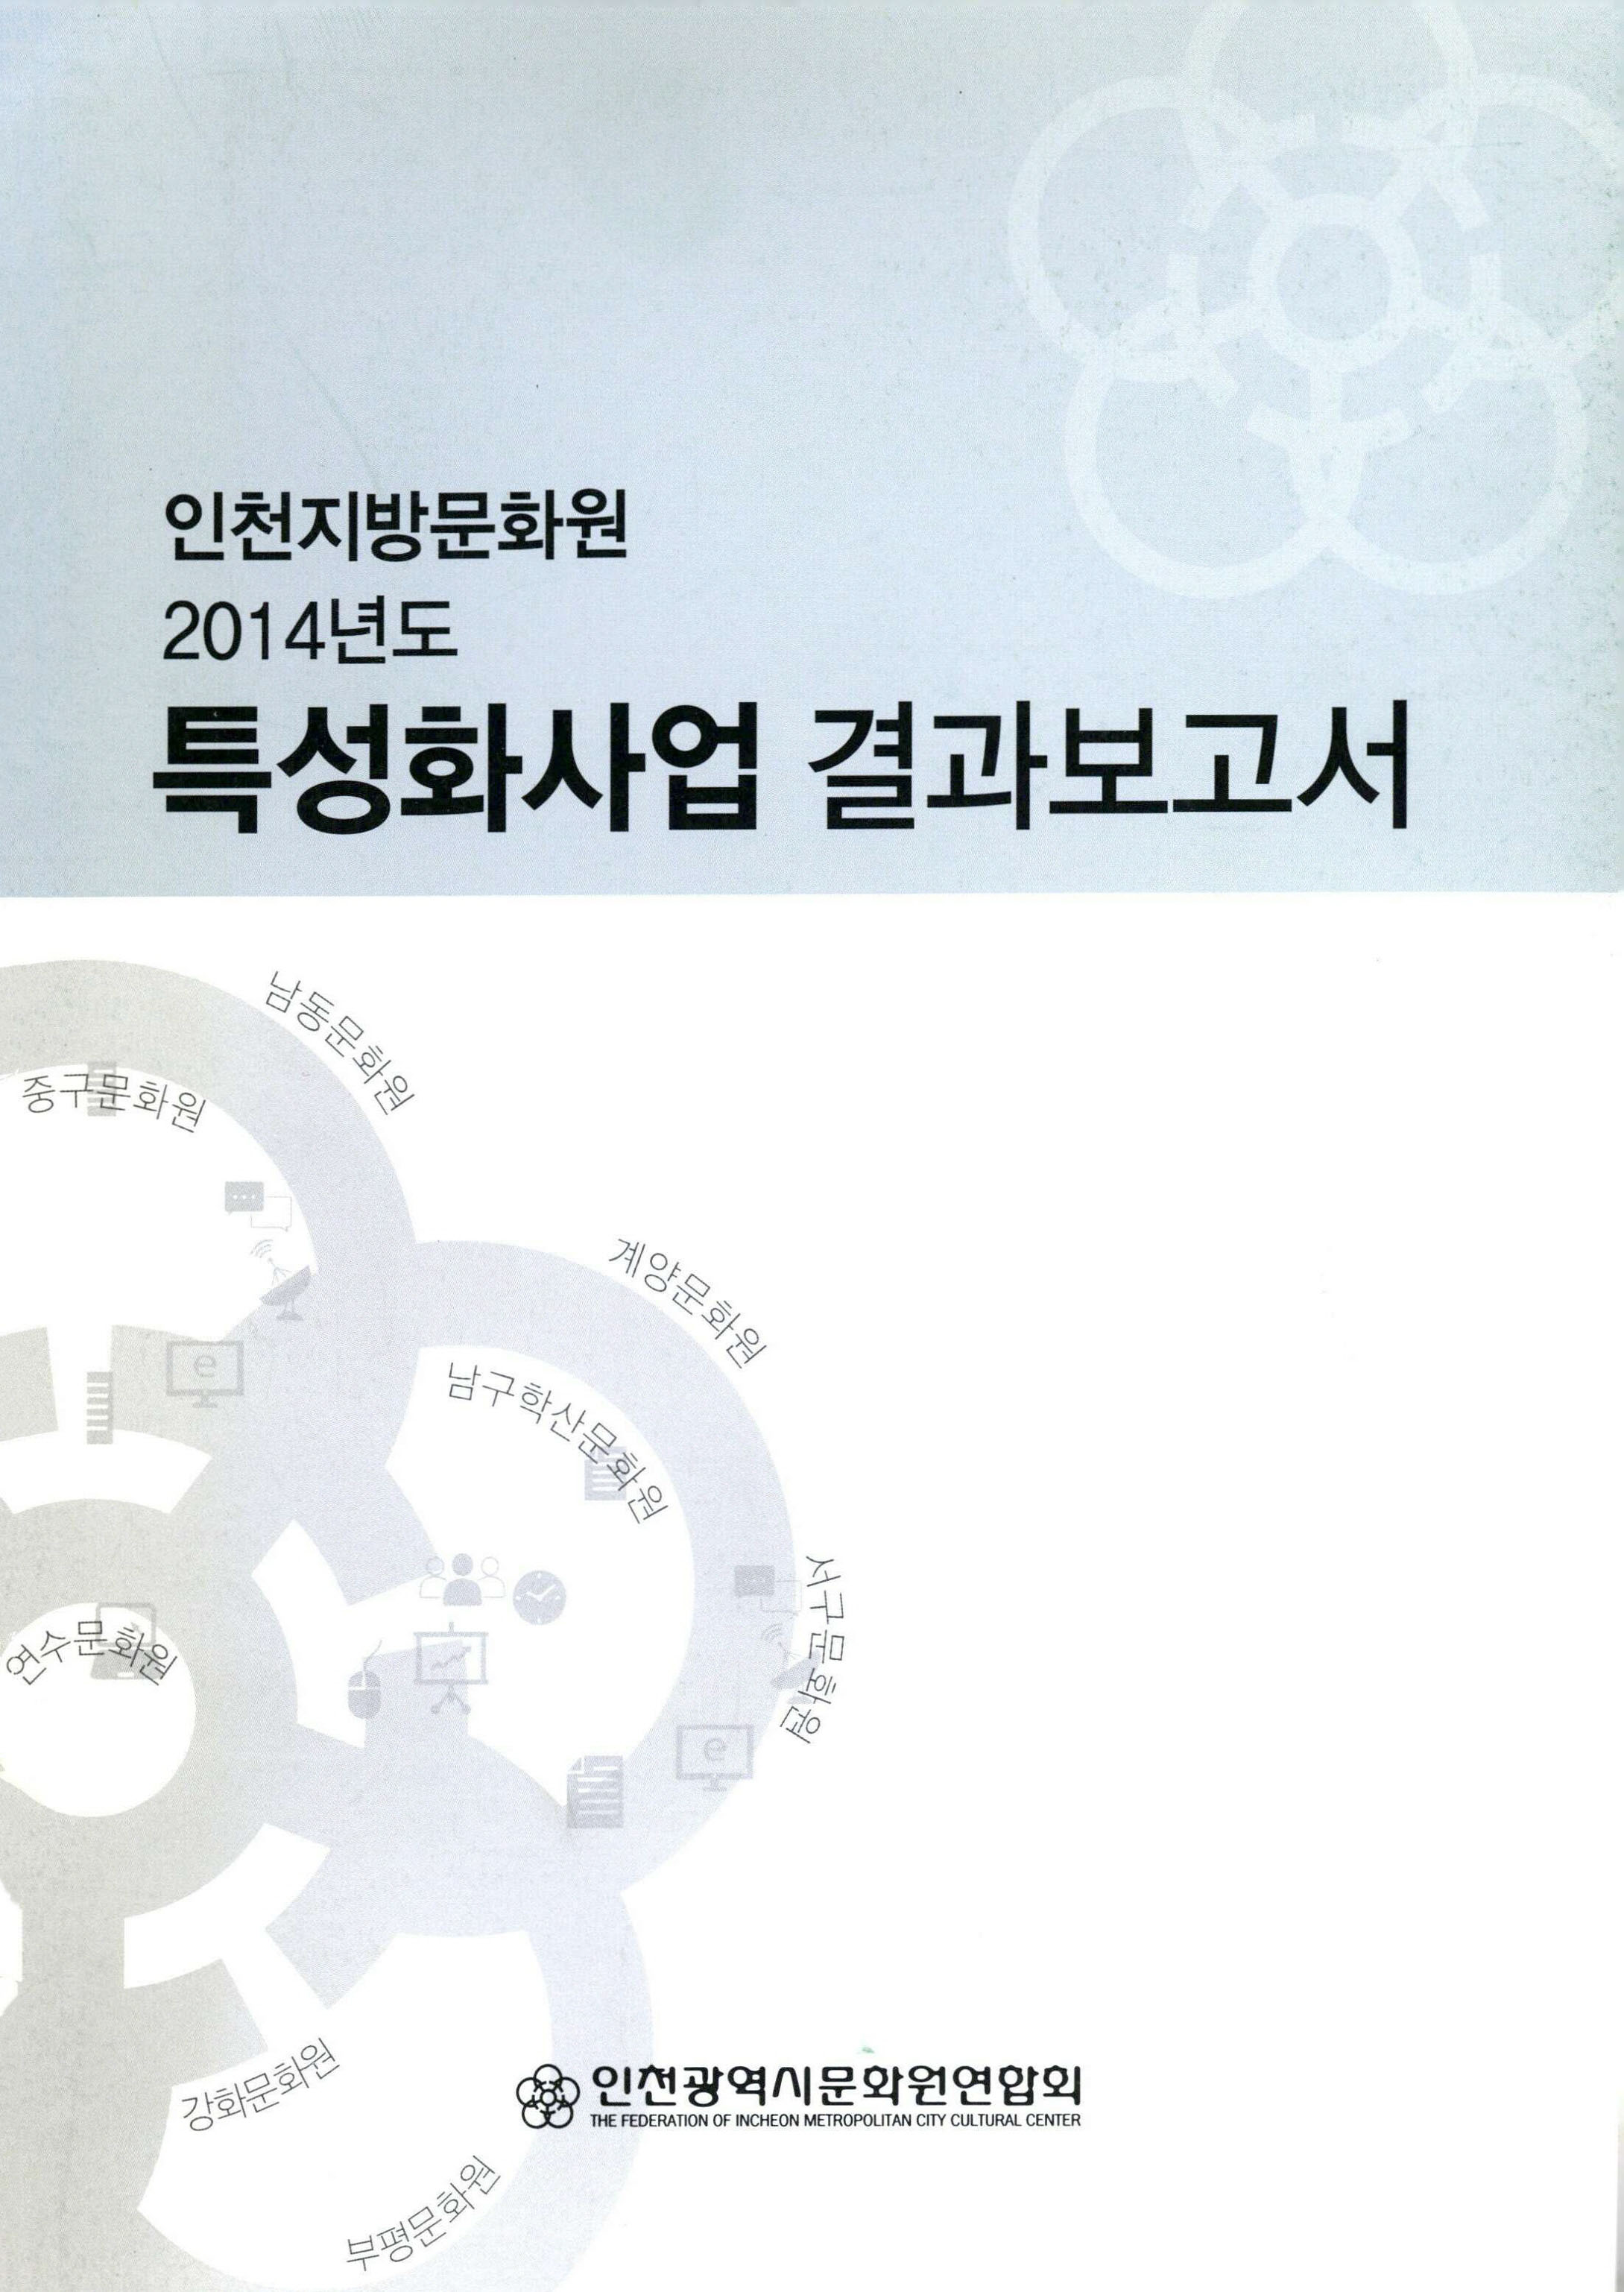 인천지방문화원 2014년도 특성화사업 결과보고서